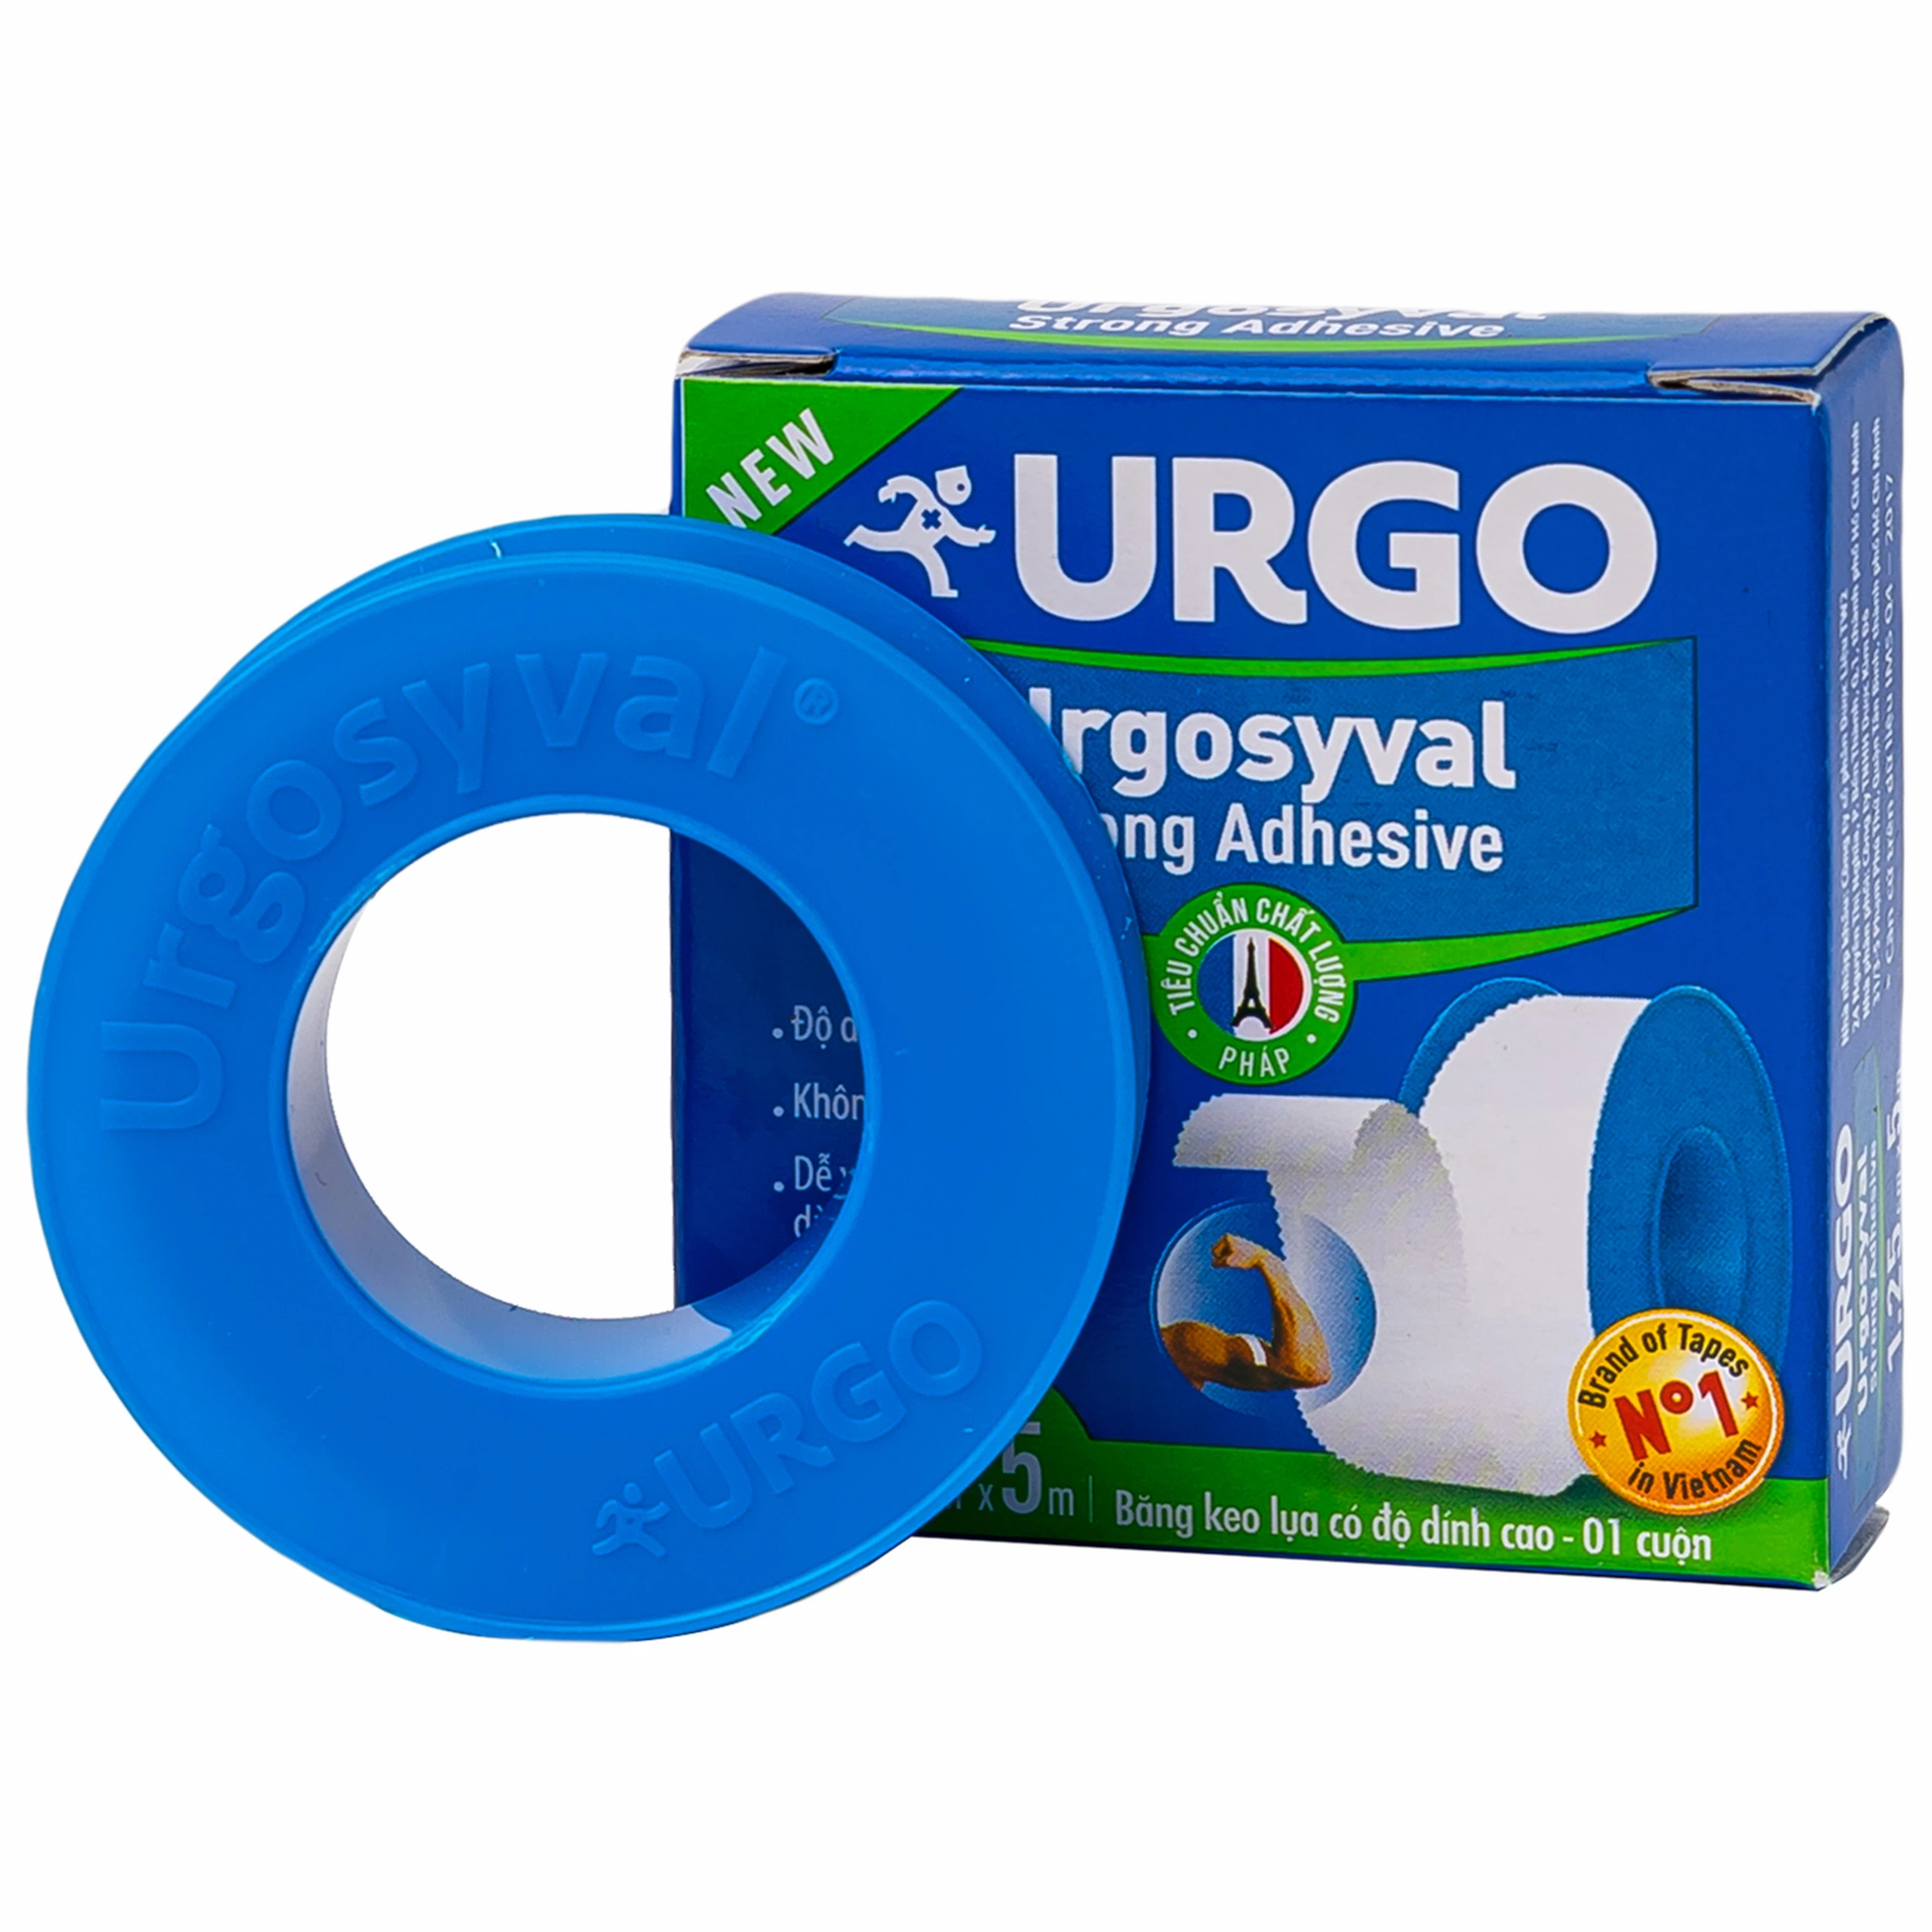 Băng keo lụa có độ dính cao Urgosyval Strong Adhessive size 1.25cm x 5m cố định băng gạc (1 cuộn)